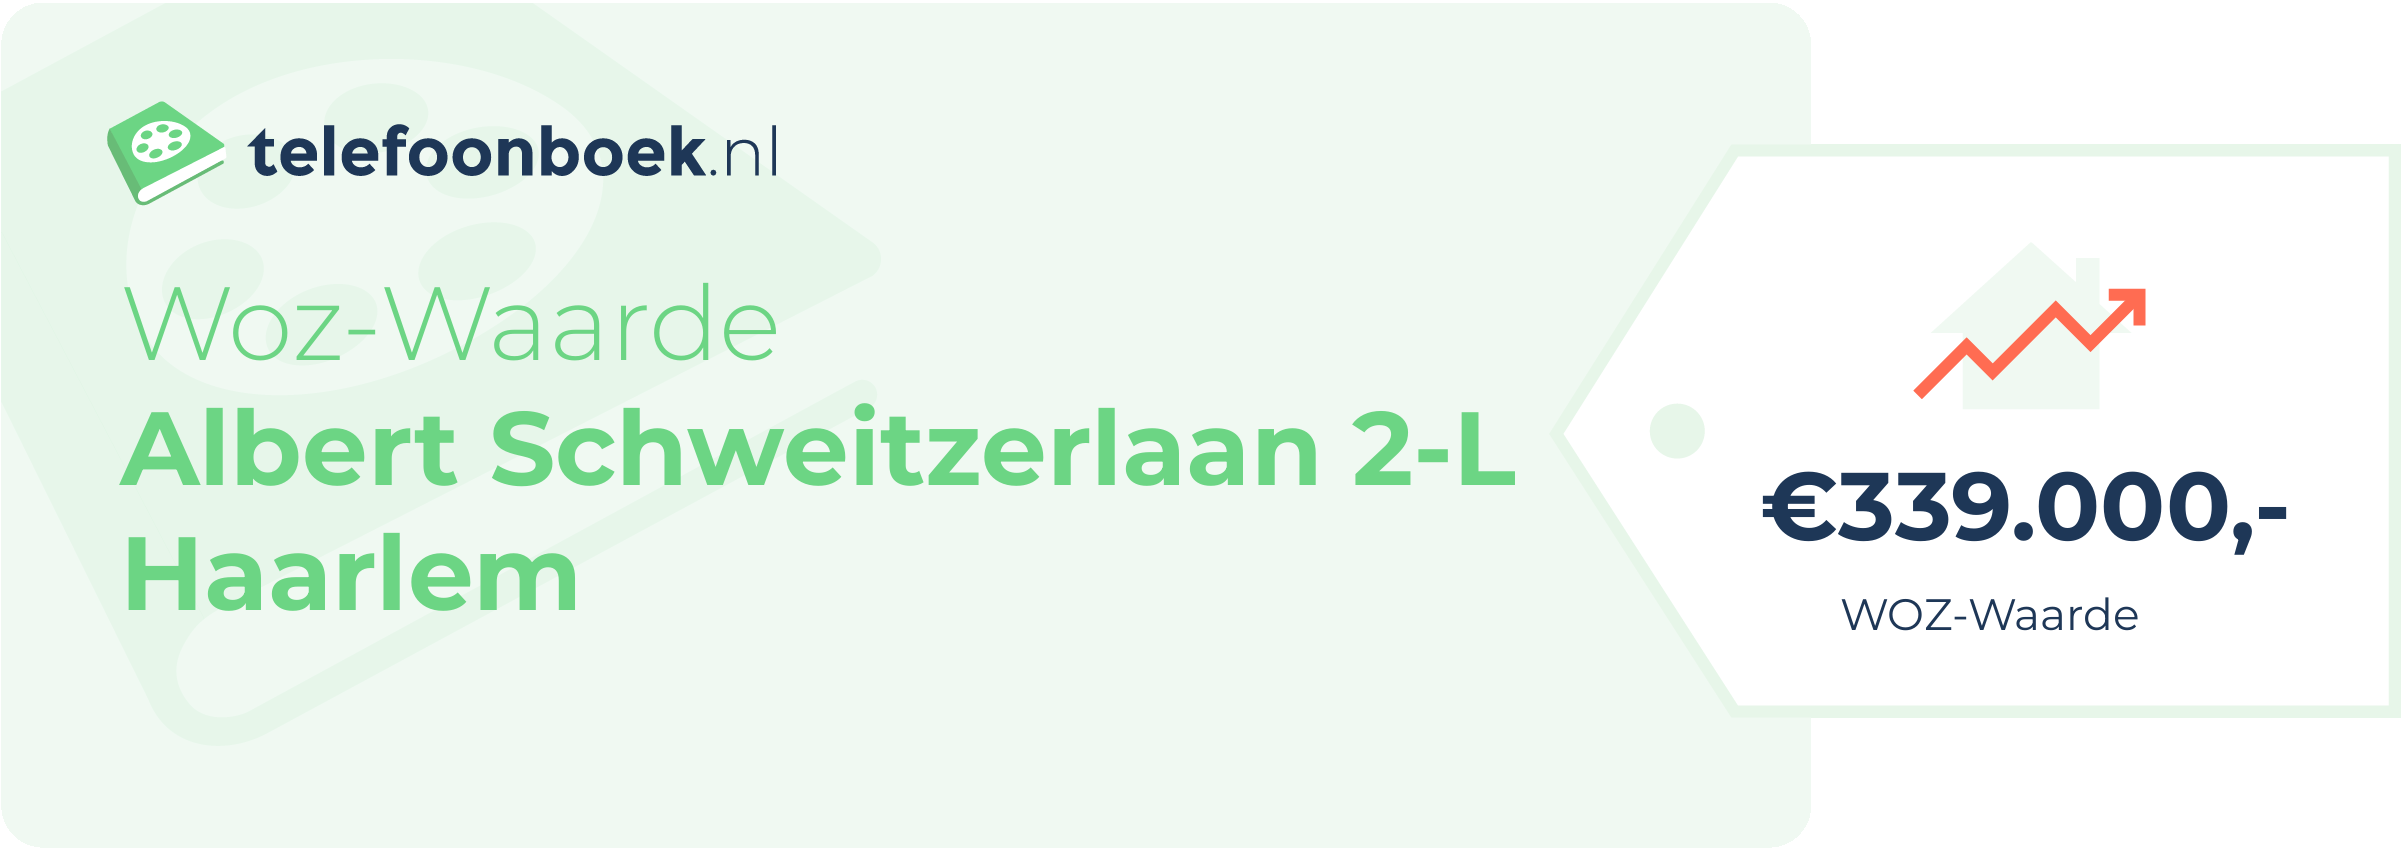 WOZ-waarde Albert Schweitzerlaan 2-L Haarlem